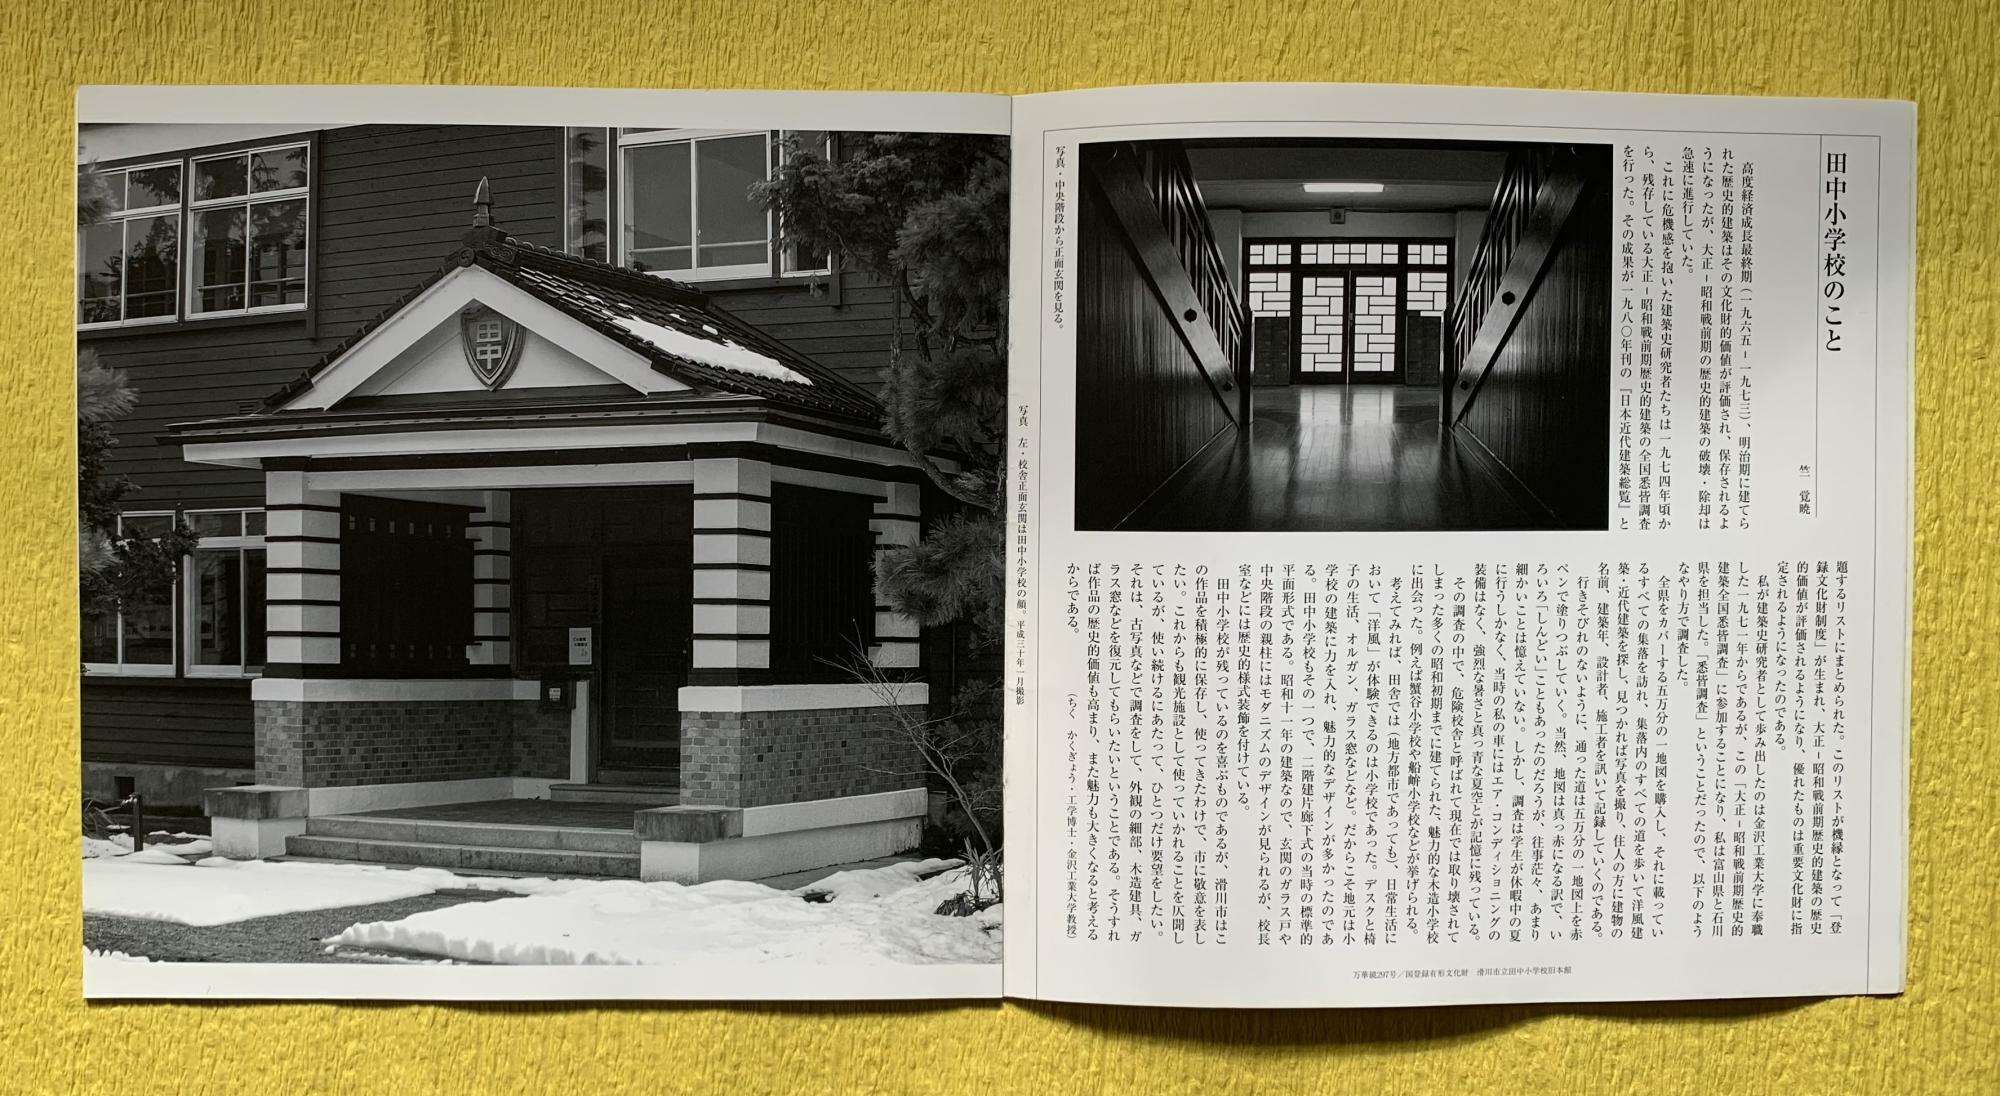 「滑川市立田中小学校旧本館」をテーマにした297号